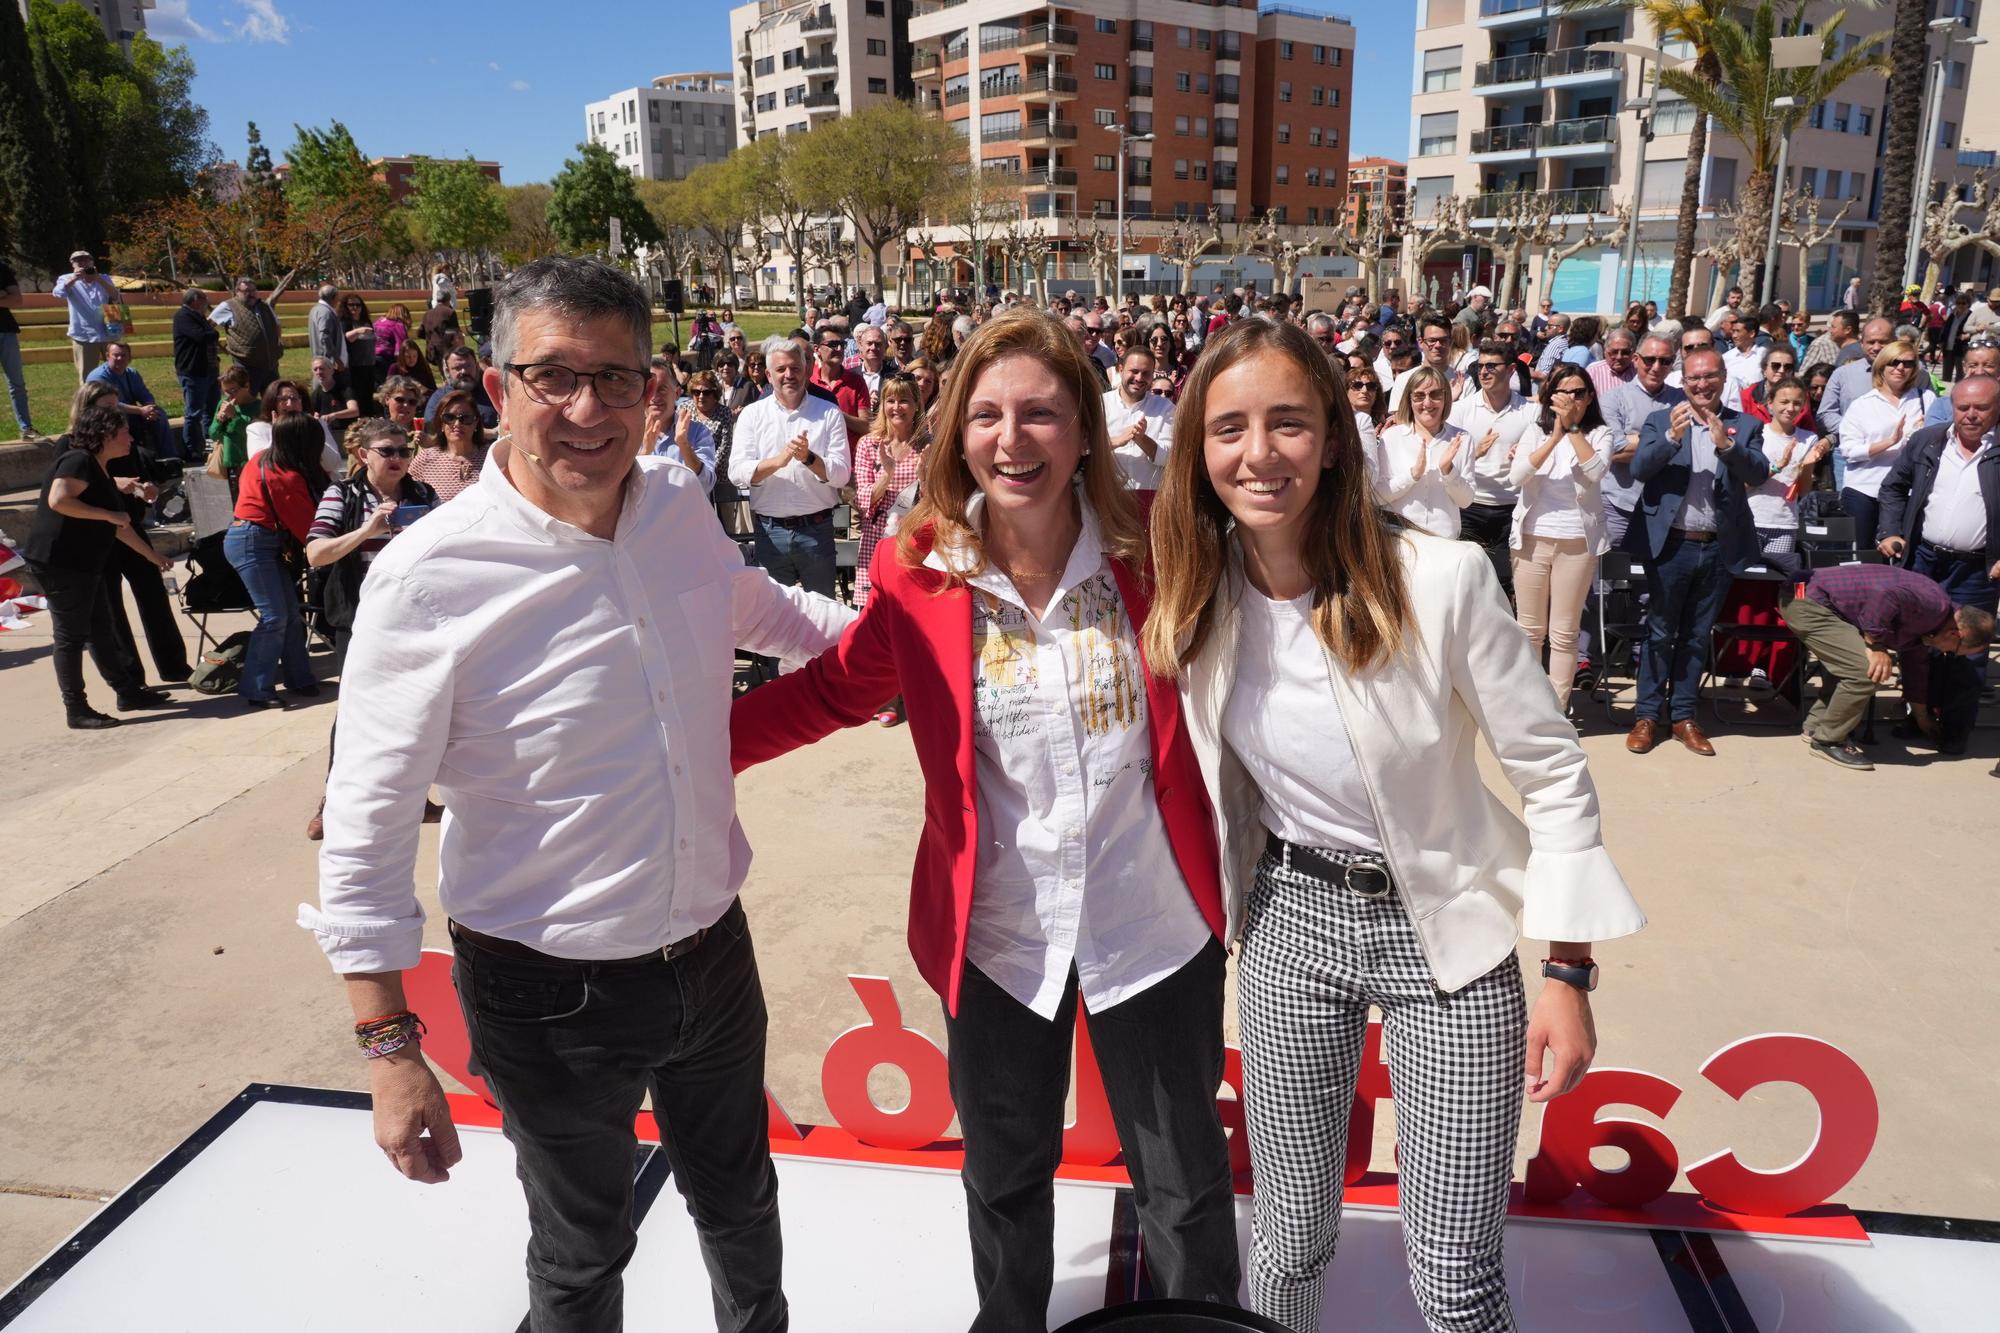 La candidatura a la alcaldía de Castellón de Amparo Marco en imágenes